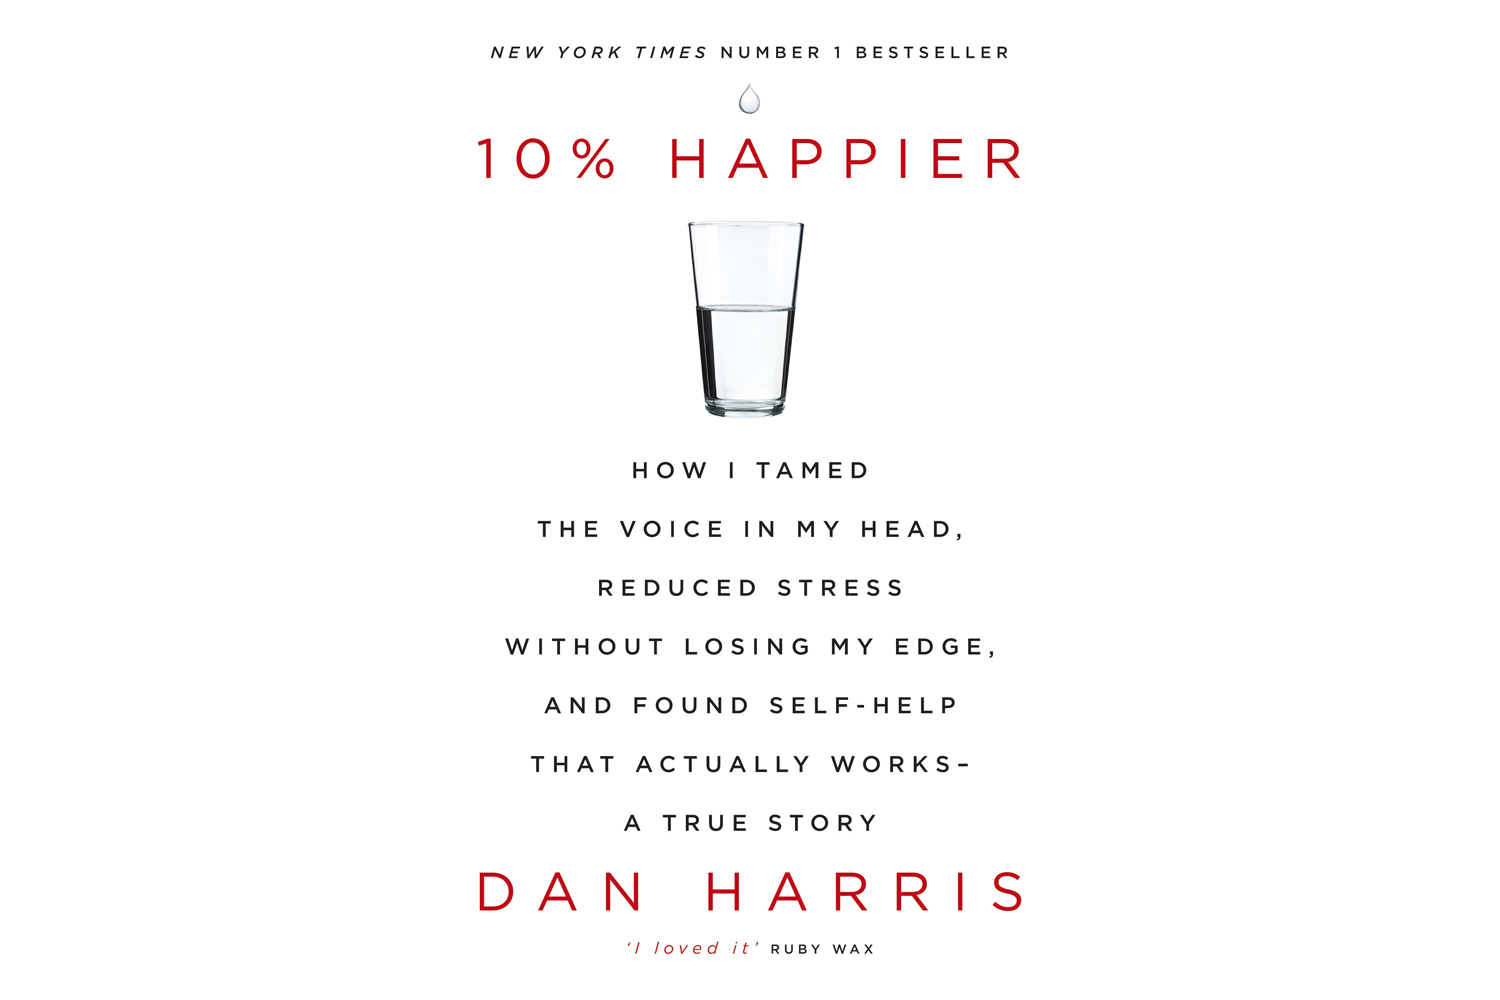 10% Happier by Dan Harris